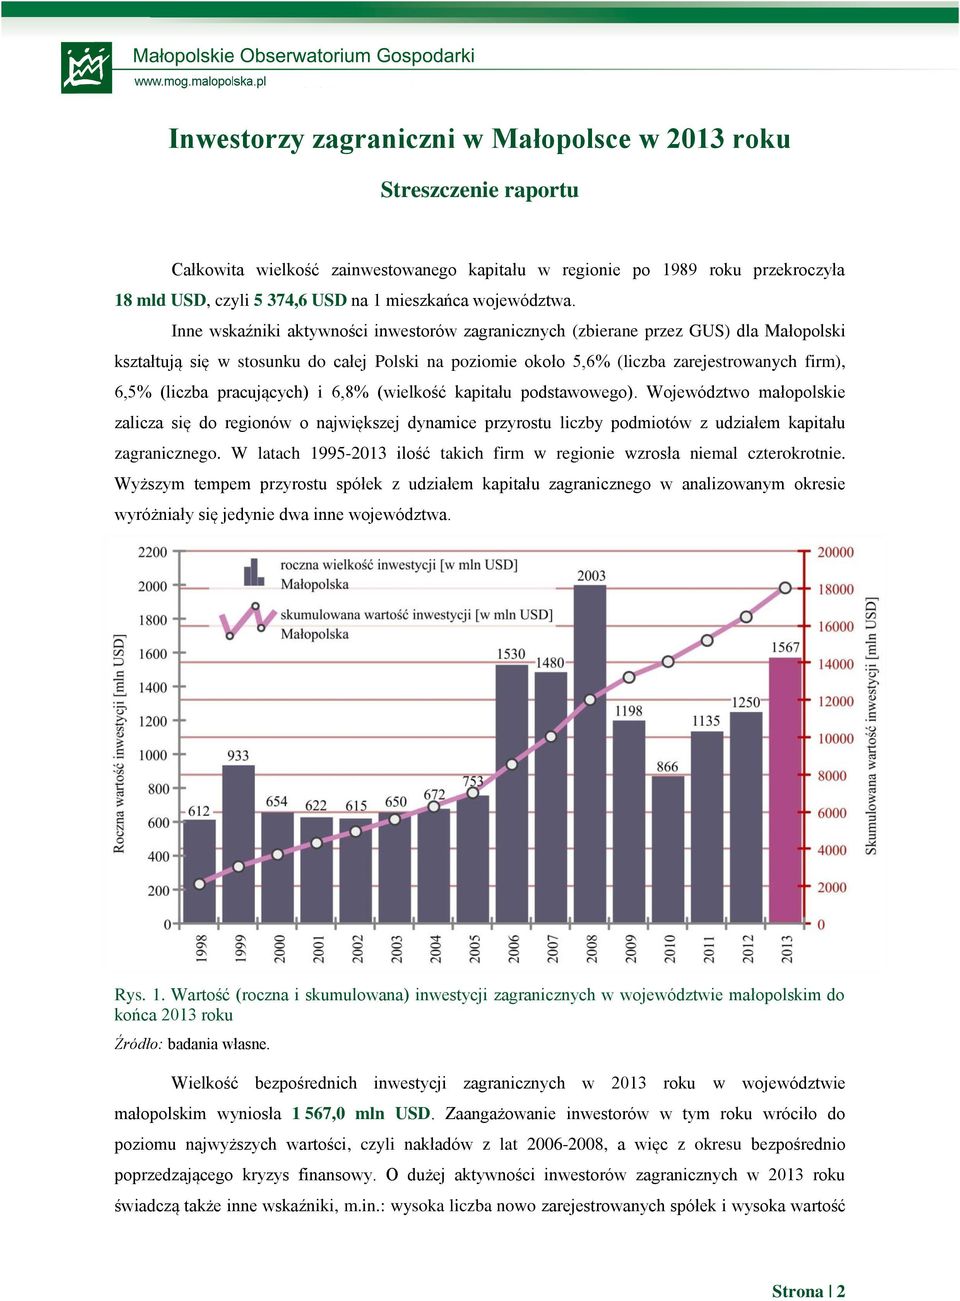 Inne wskaźniki aktywności inwestorów zagranicznych (zbierane przez GUS) dla Małopolski kształtują się w stosunku do całej Polski na poziomie około 5,6% (liczba zarejestrowanych firm), 6,5% (liczba